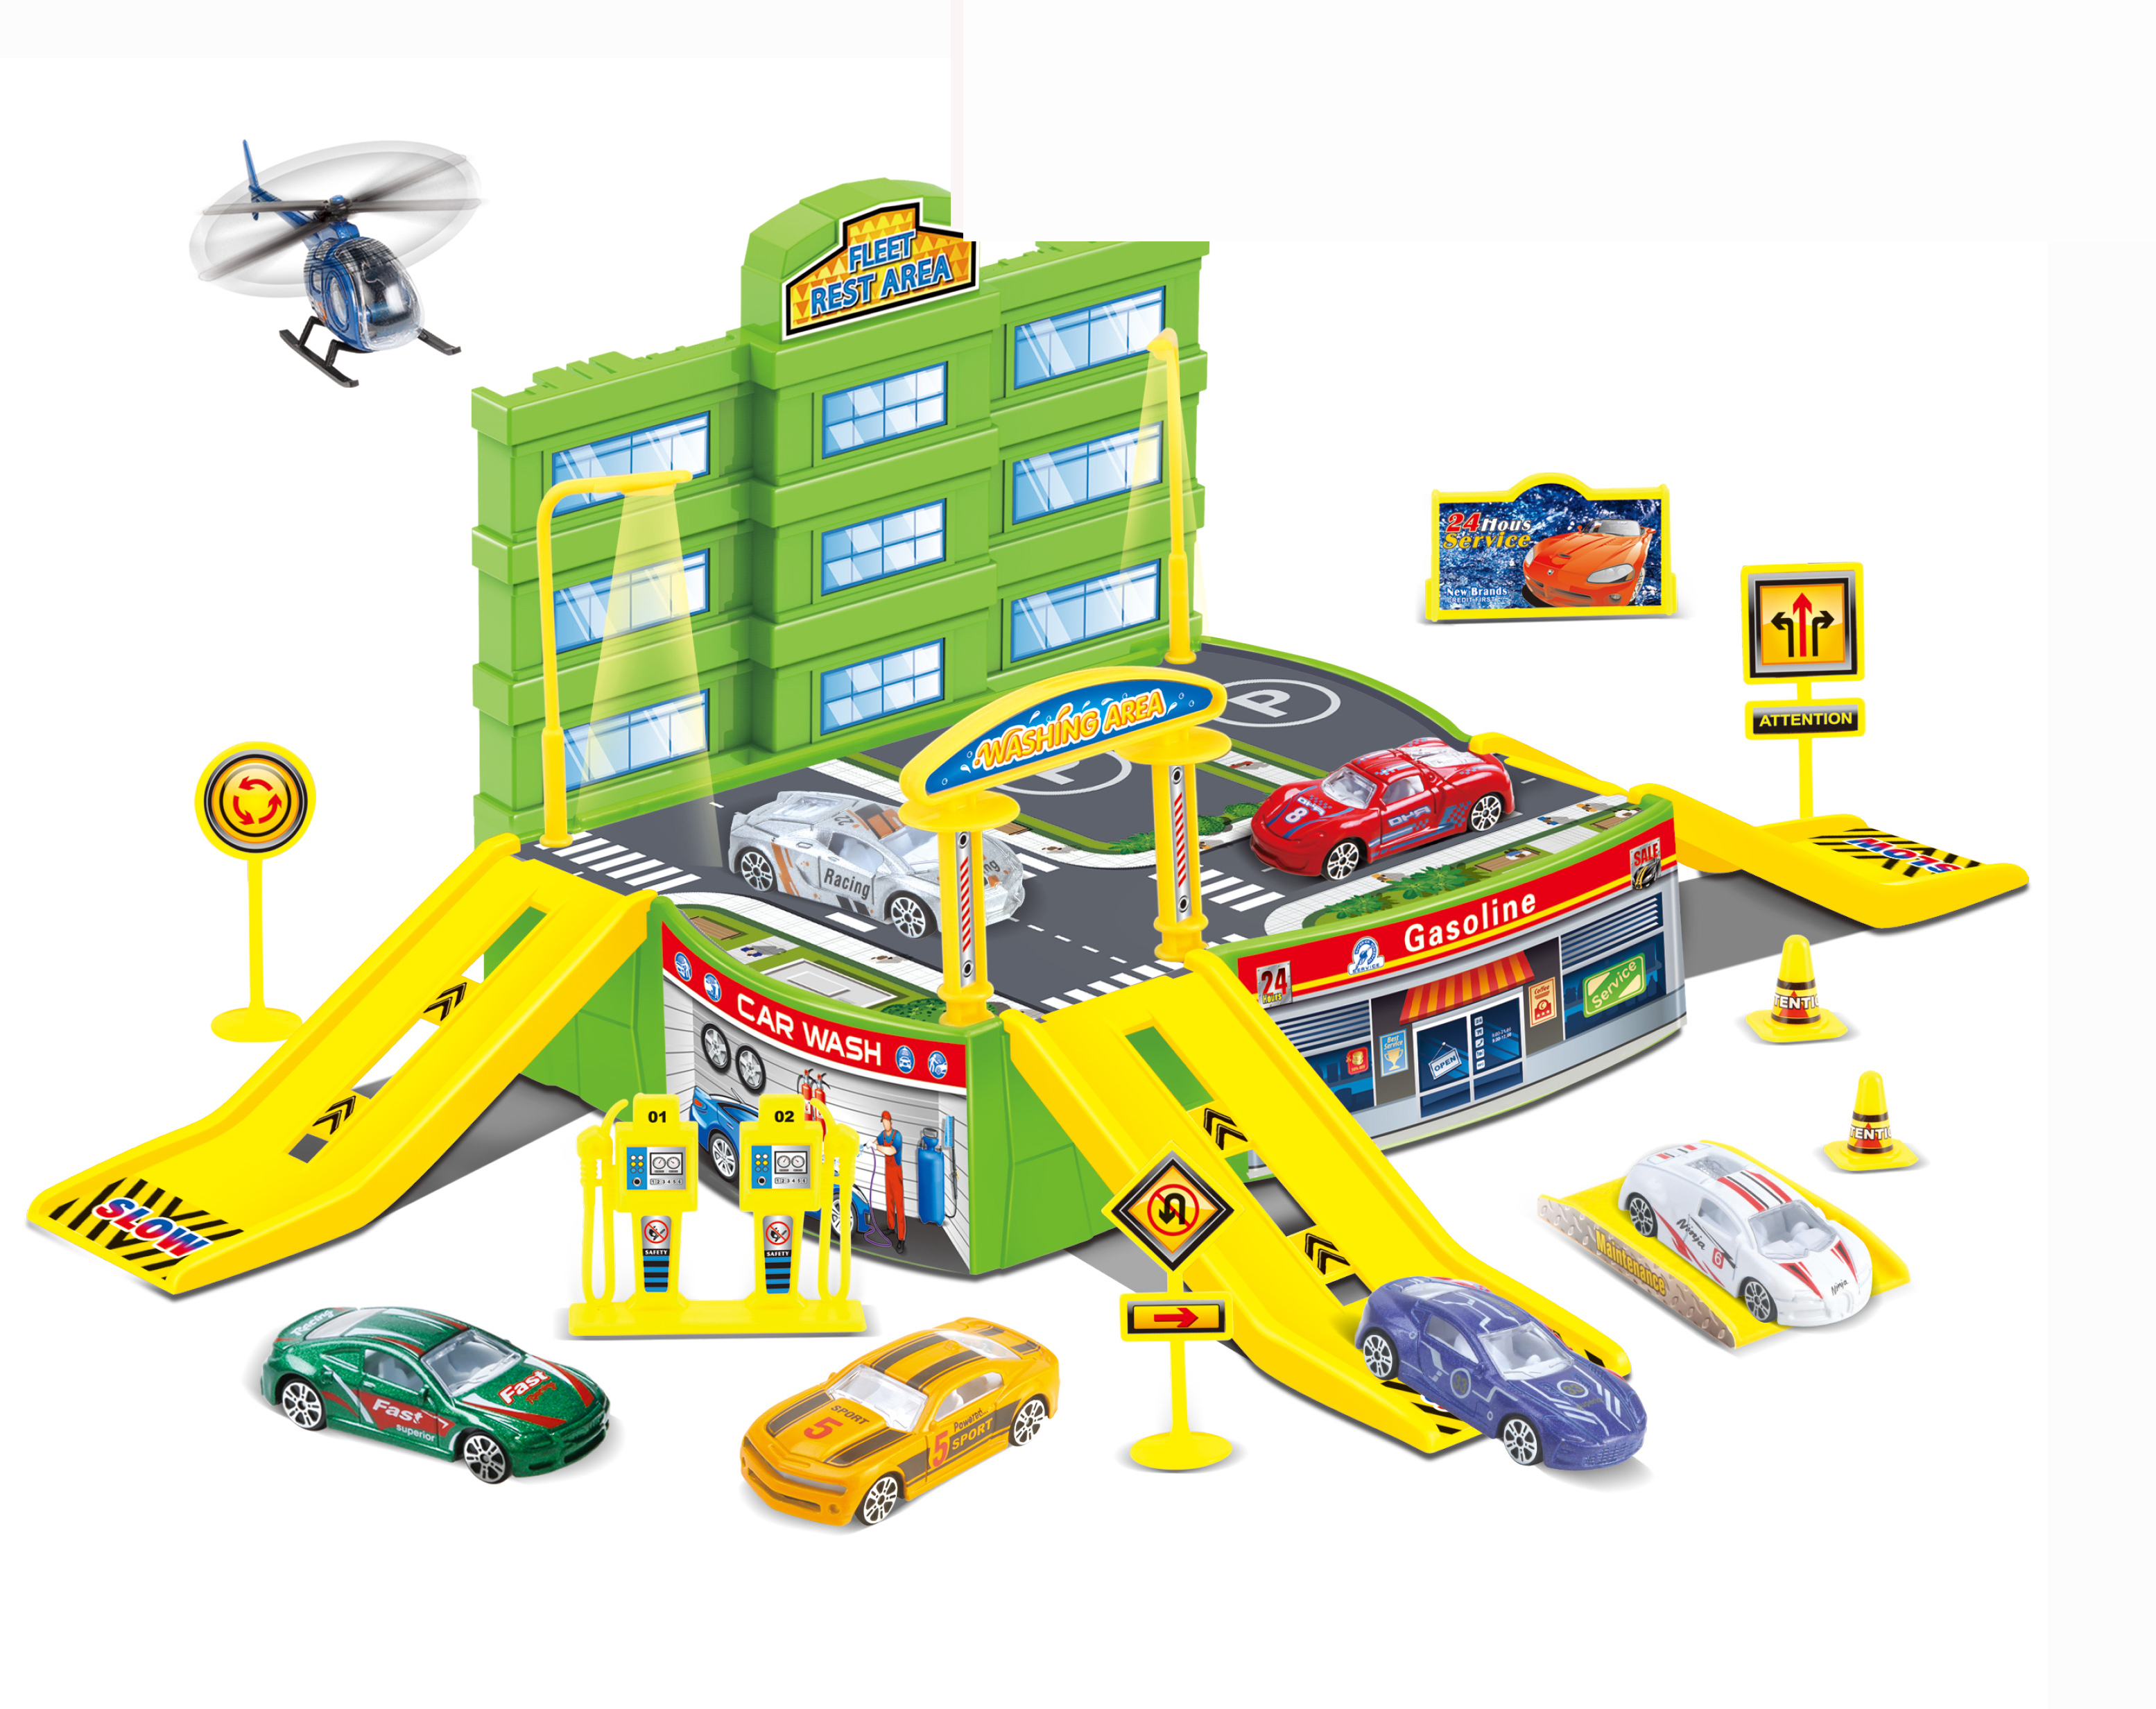 Bộ đồ chơi bãi đỗ xe ô tô KAVY kèm nhiều chi tiết như máy bay, đường phố, cây xăng... nhựa nguyên sinh an toàn